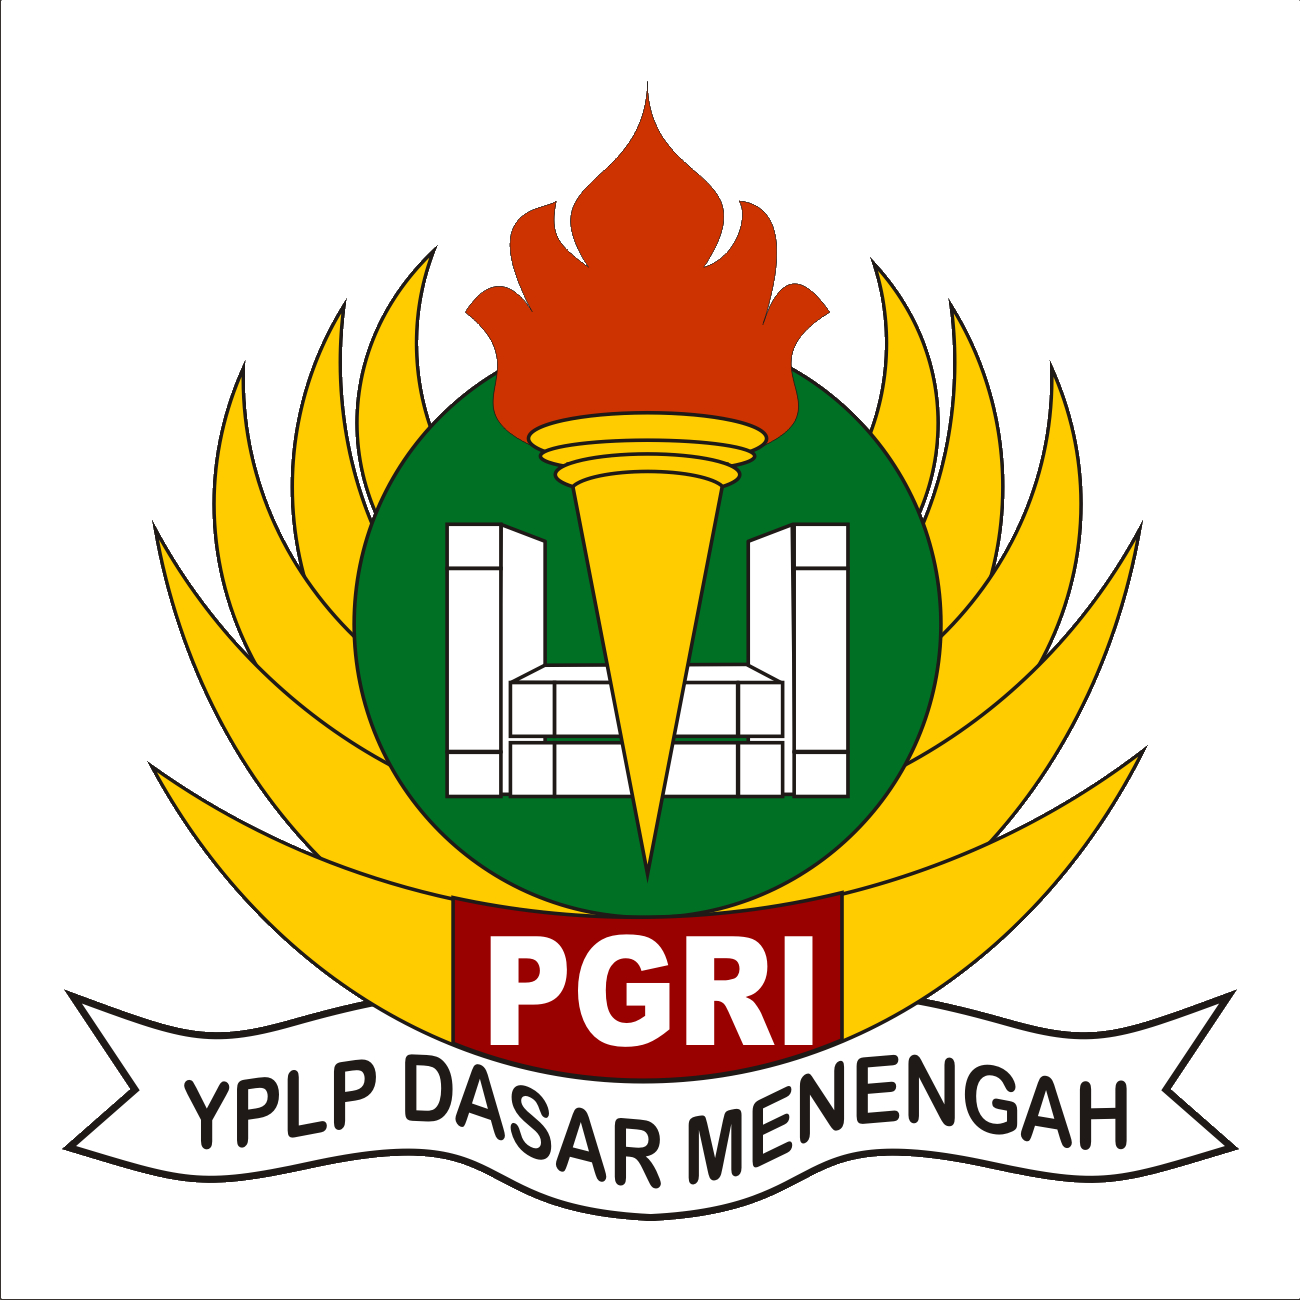 Makna Logo Lambang Yayayasan YPLP PGRI Terbaru - Pusat Ilmu Pengetahuan